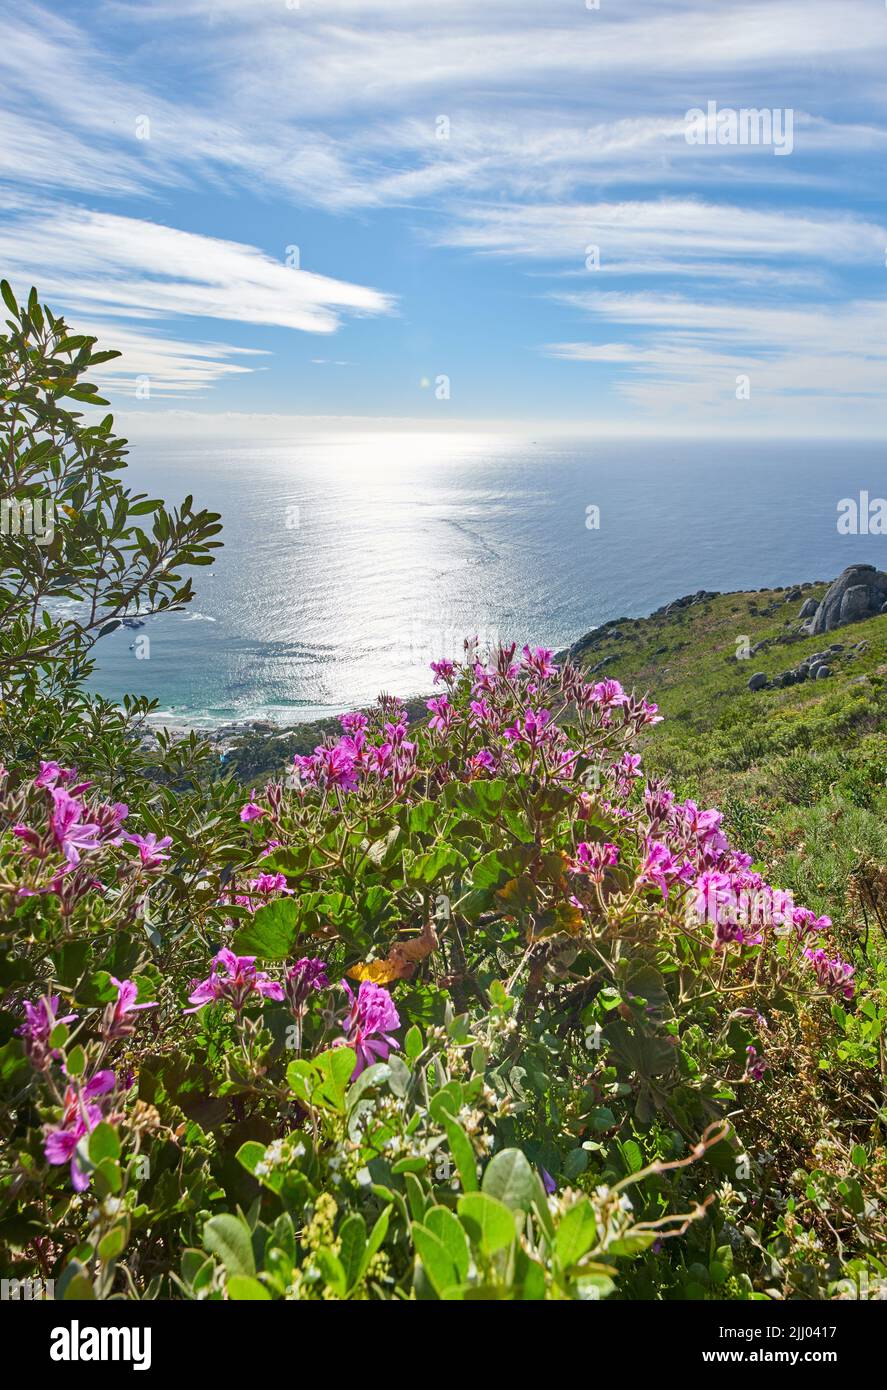 Fiori rosa di geranio di edera che crescono nel loro habitat naturale con l'oceano sullo sfondo. Paesaggio lussureggiante di piante di pelargonio in un tranquillo e. Foto Stock